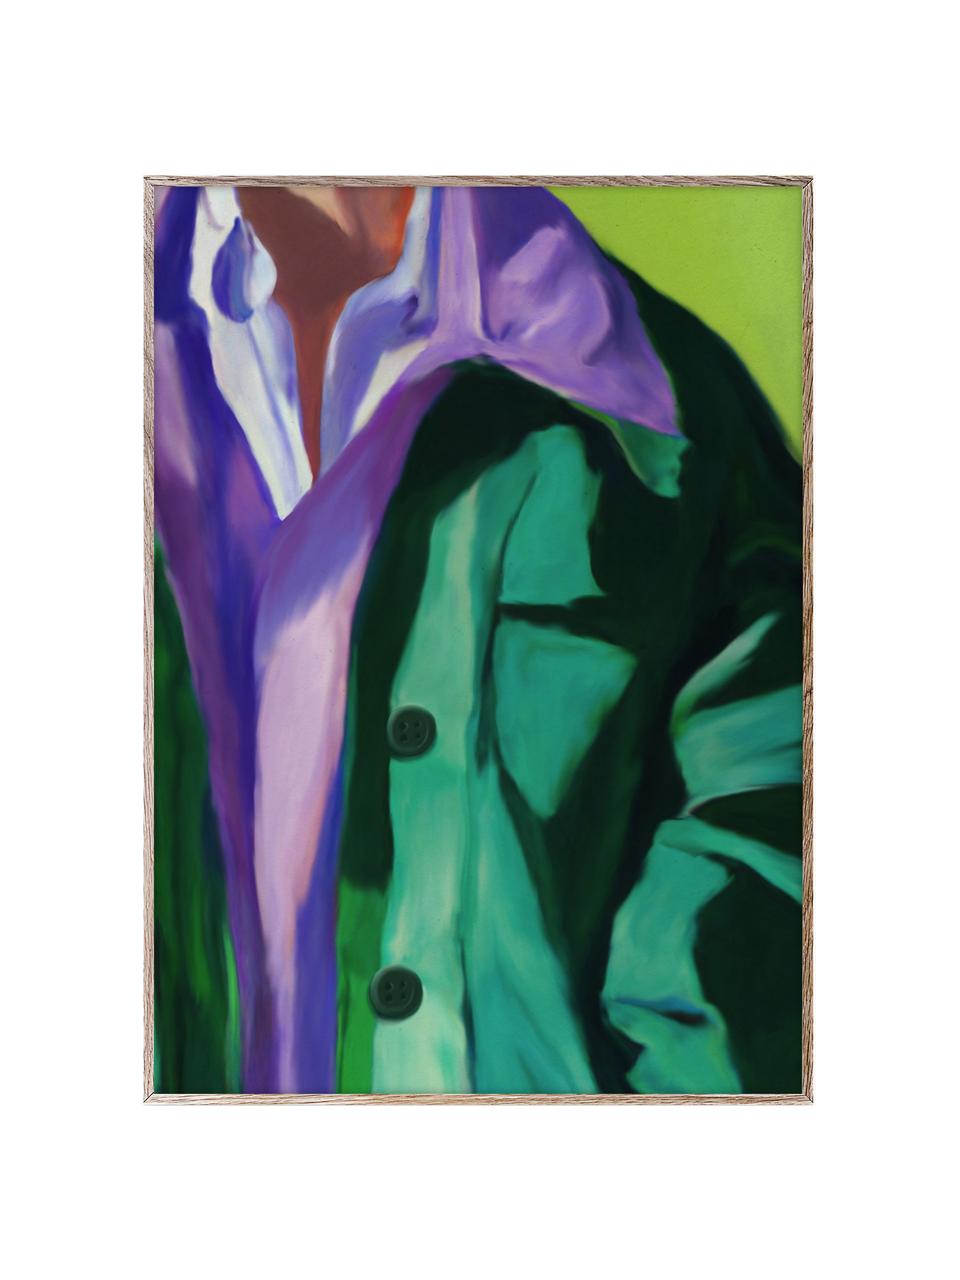 Plakat Spring Jacket, 210 g matowy papier, druk cyfrowy z 10 farbami odpornymi na promieniowanie UV, Lila, turkusowy zielony, S 30 x W 40 cm